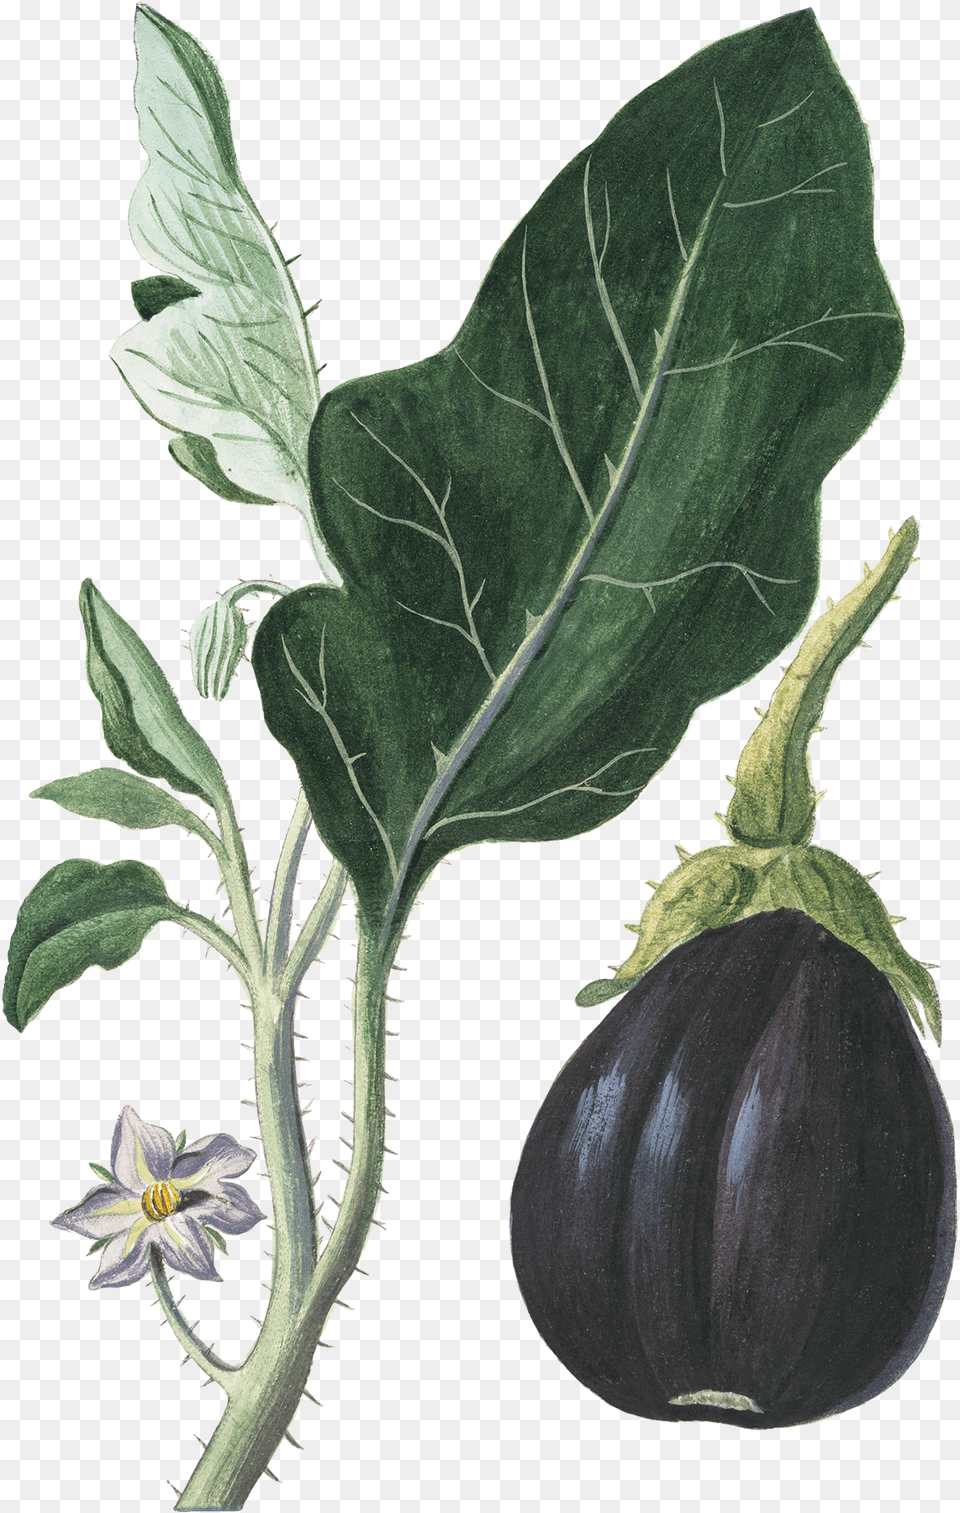 Eggplant Vegetable Botanical Illustration Botany Botanical Illustration Vegetables, Food, Plant, Produce Png